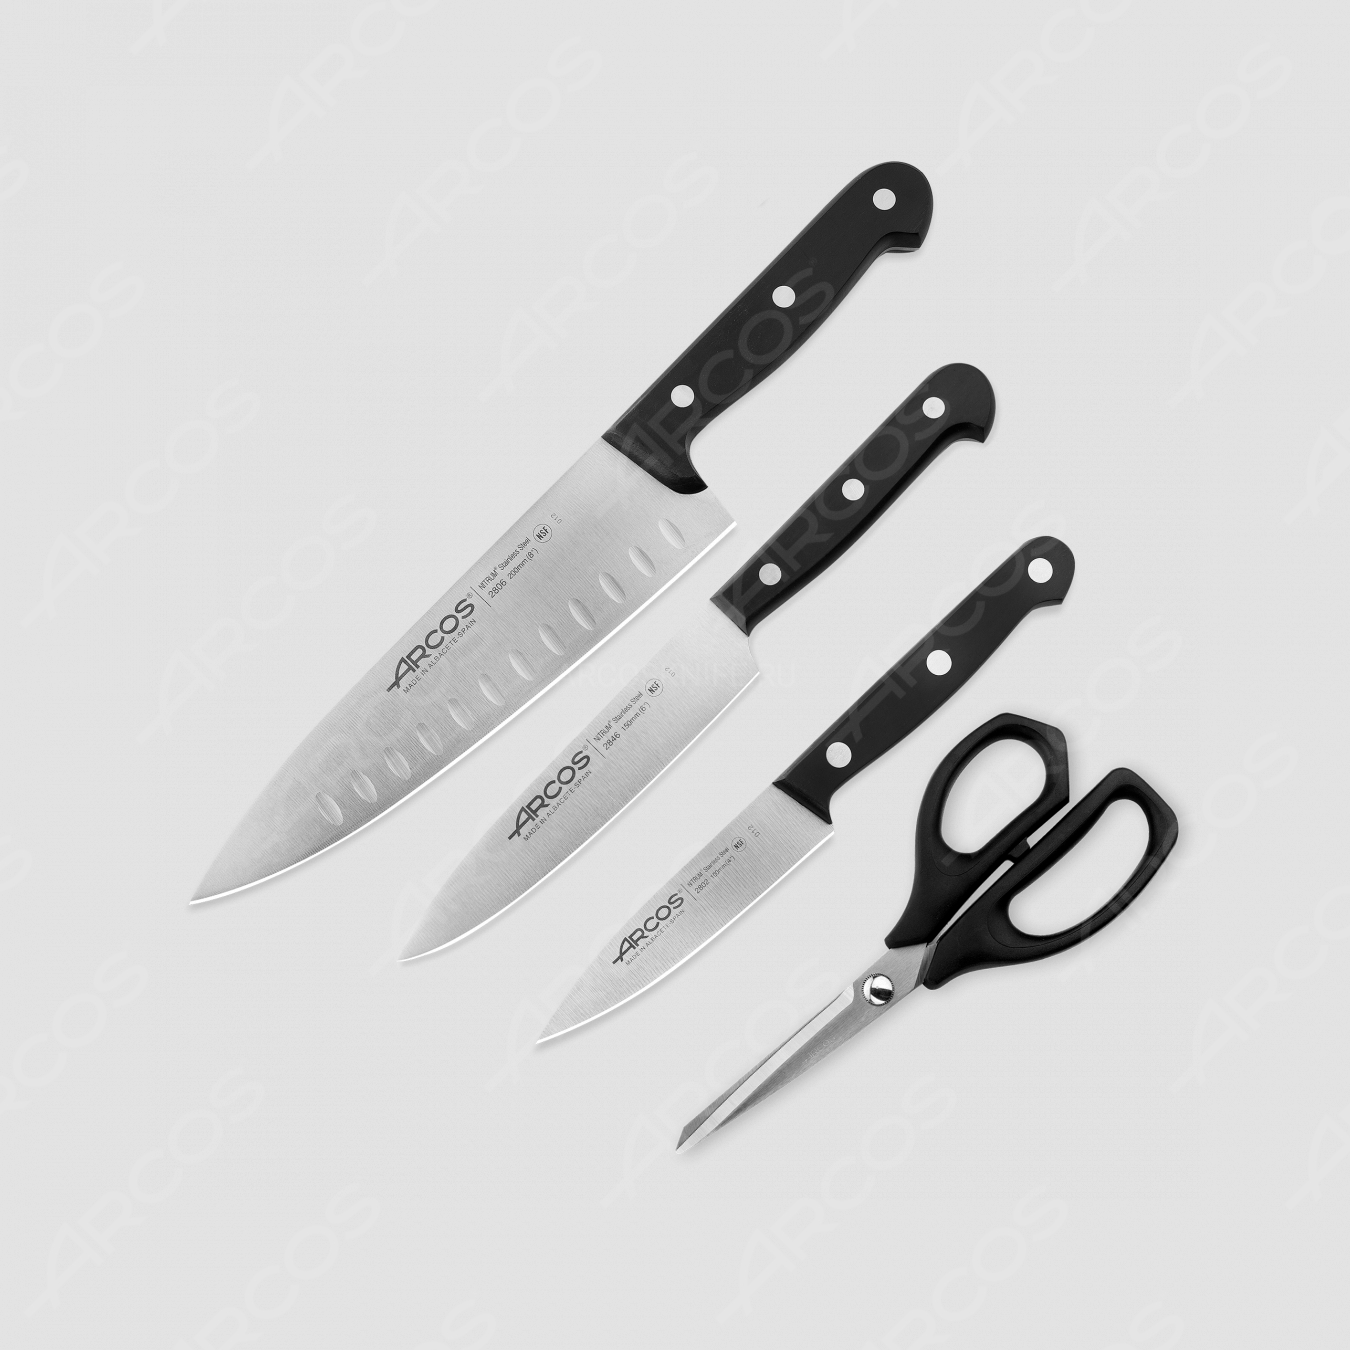 Набор ножей 3 шт. (10 см, 15 см, 20 см), + ножницы в подарок, упаковка-коробка, серия Universal, ARCOS, Испания